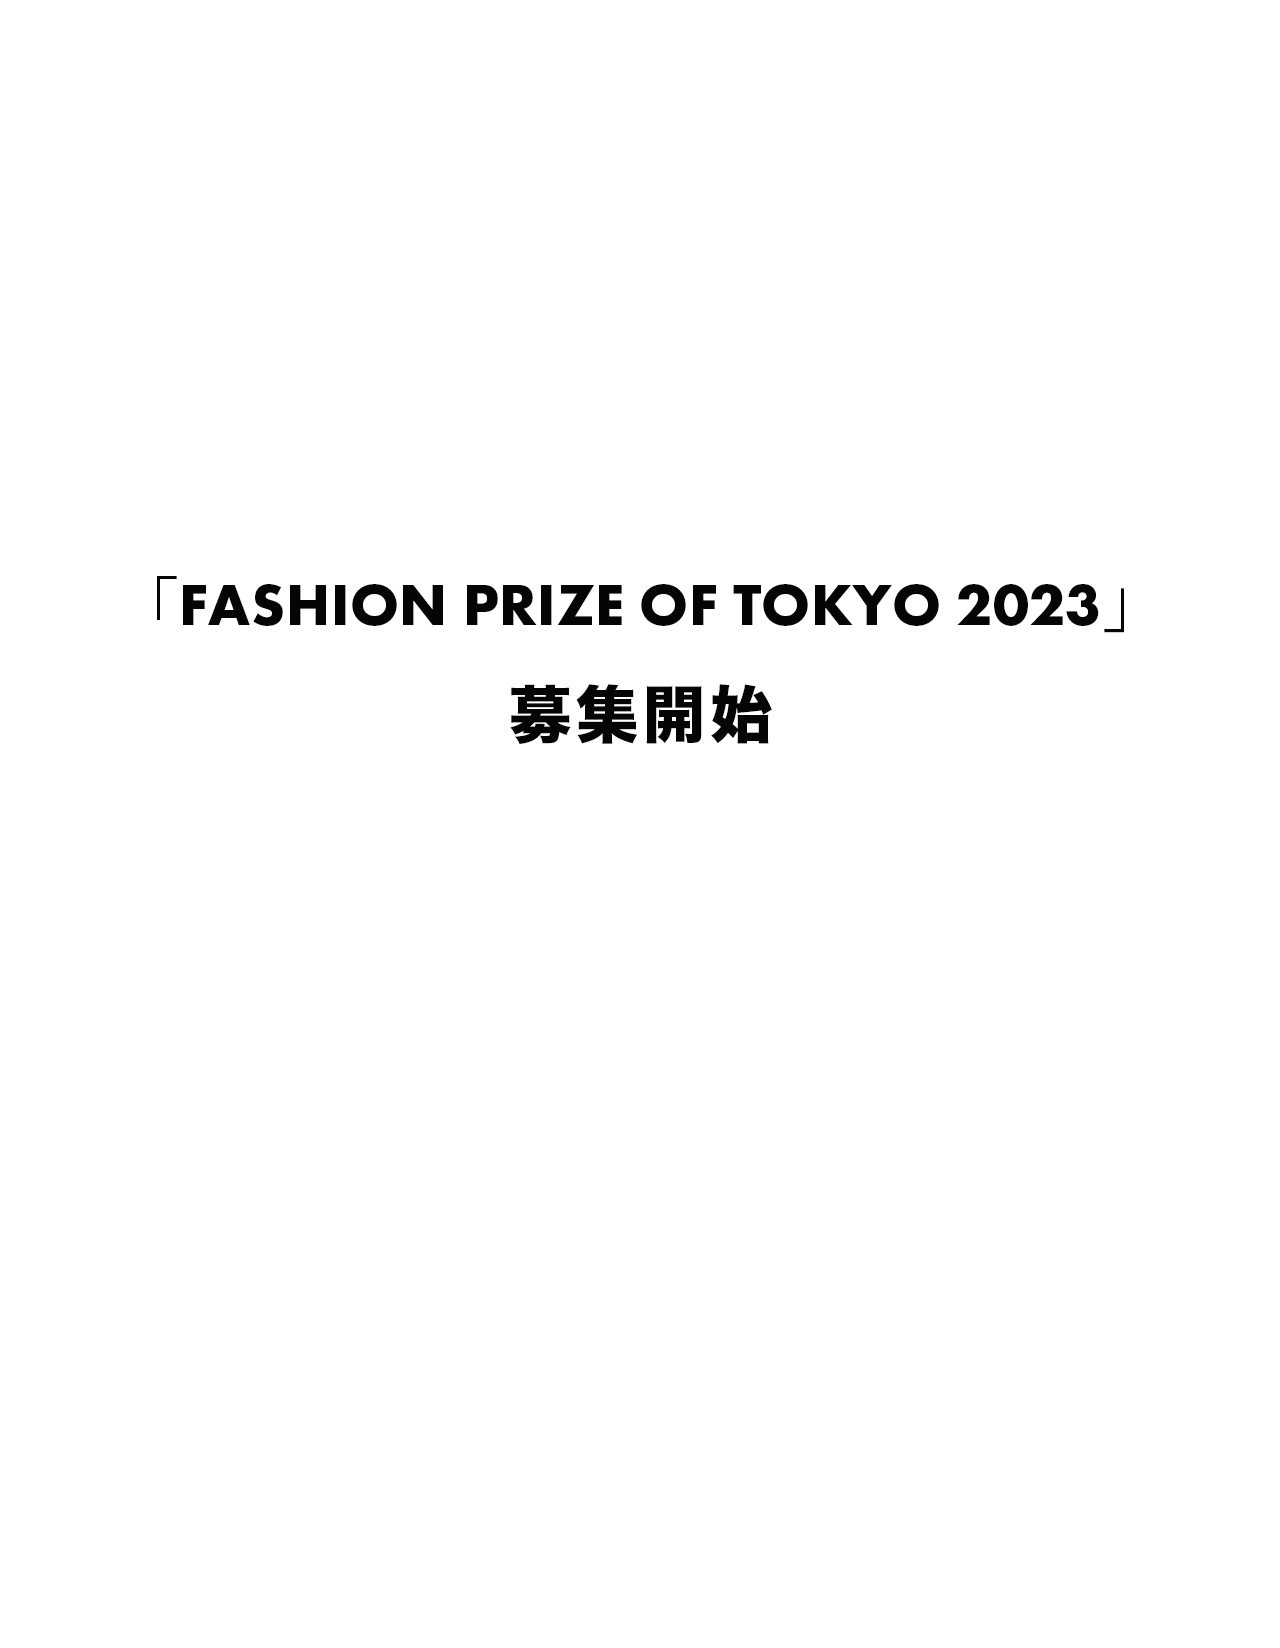 「FASHION PRIZE OF TOKYO 2023」募集開始